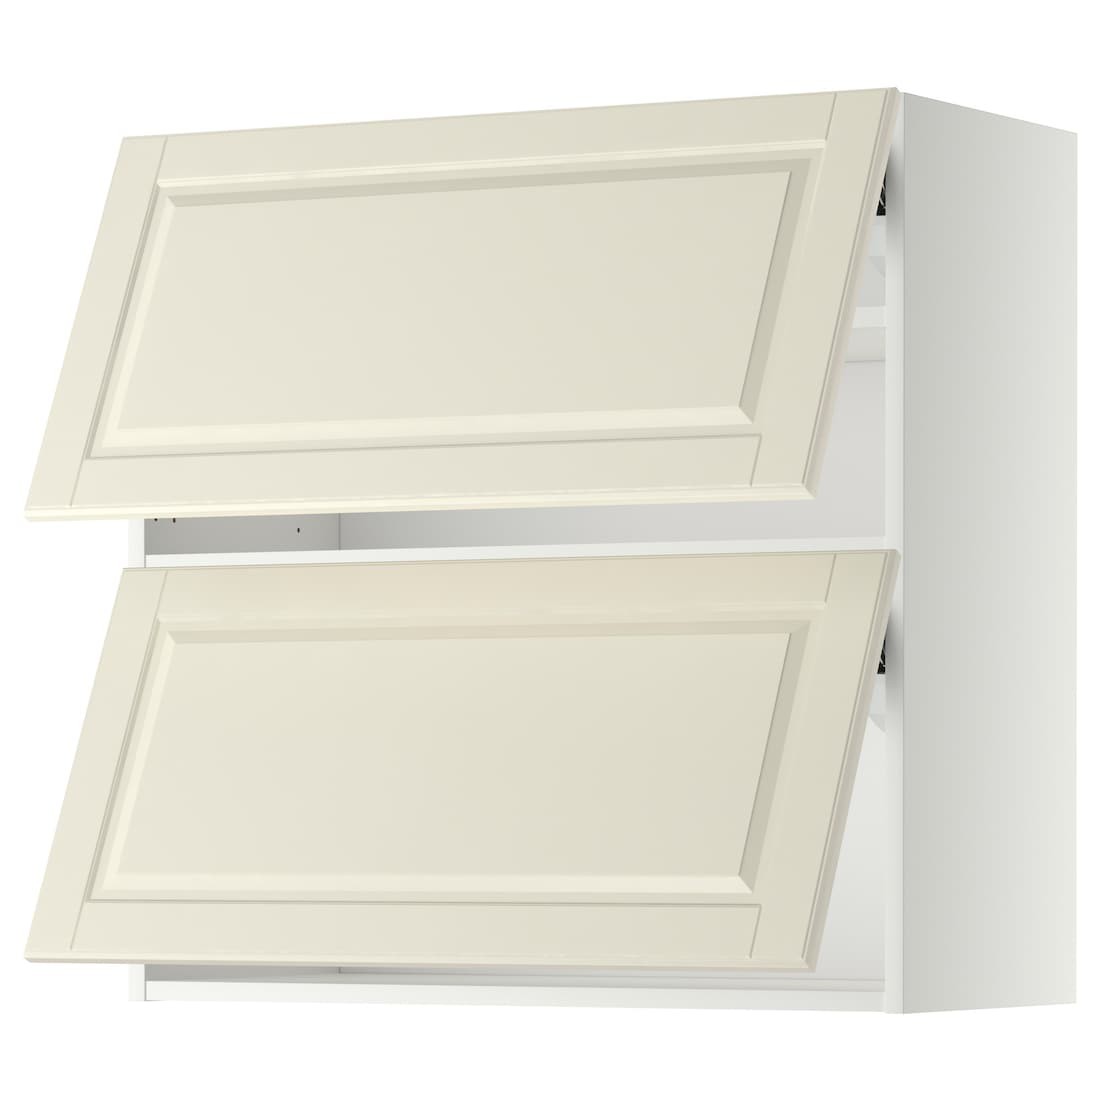 METOD МЕТОД Навесной горизонтальный шкаф / 2 двери, белый / Bodbyn кремовый, 80x80 см